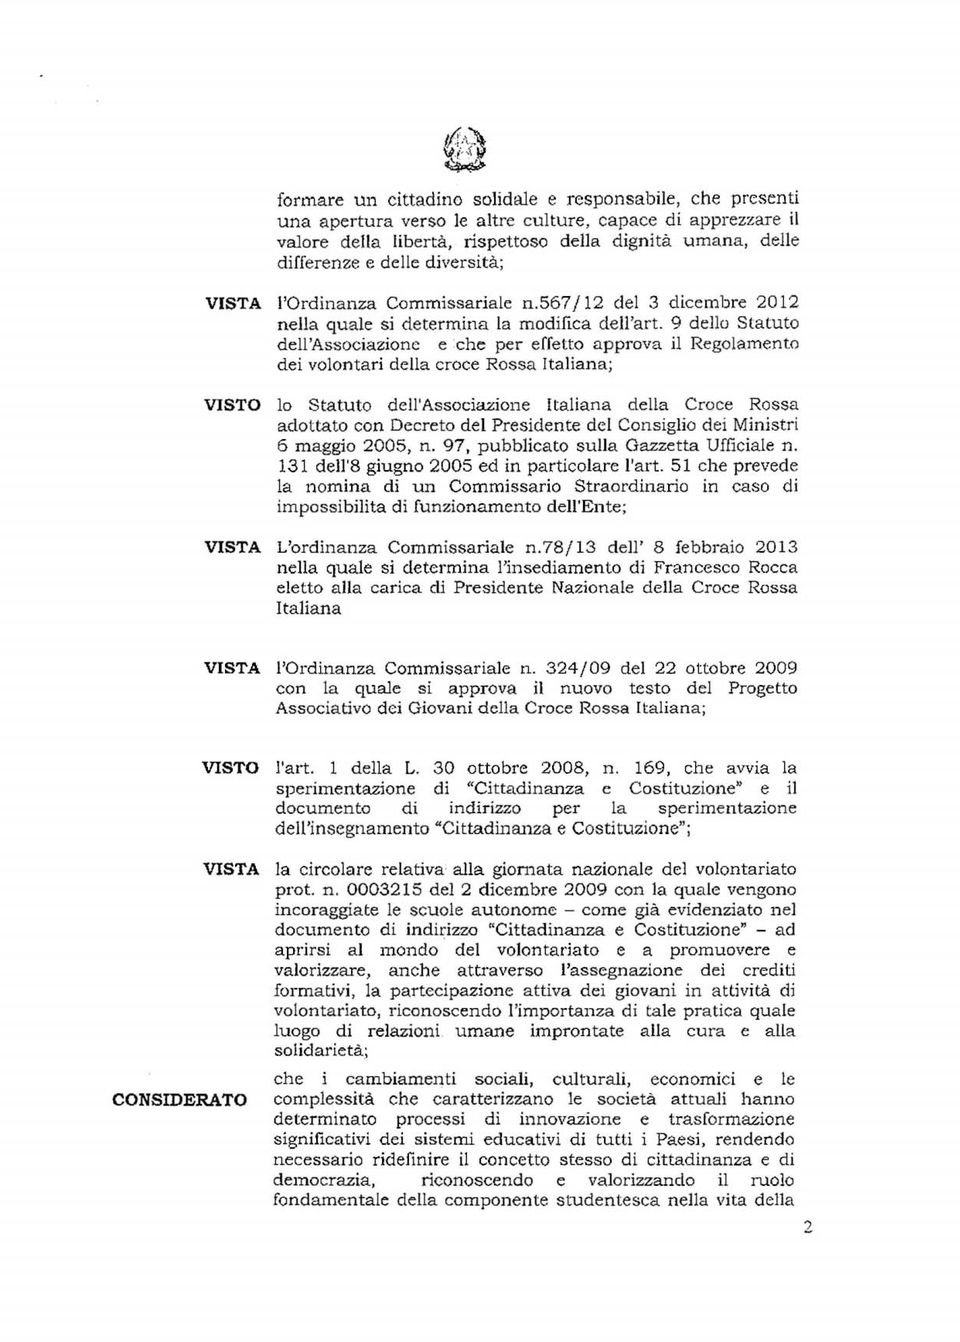 9 dello Statuto dell'associazione c che per effetto approva il Regolamento dei volontari della croce Rossa Italiana; lo Statuto dell'associazione Italiana della Croce Rossa adottato con Decreto del